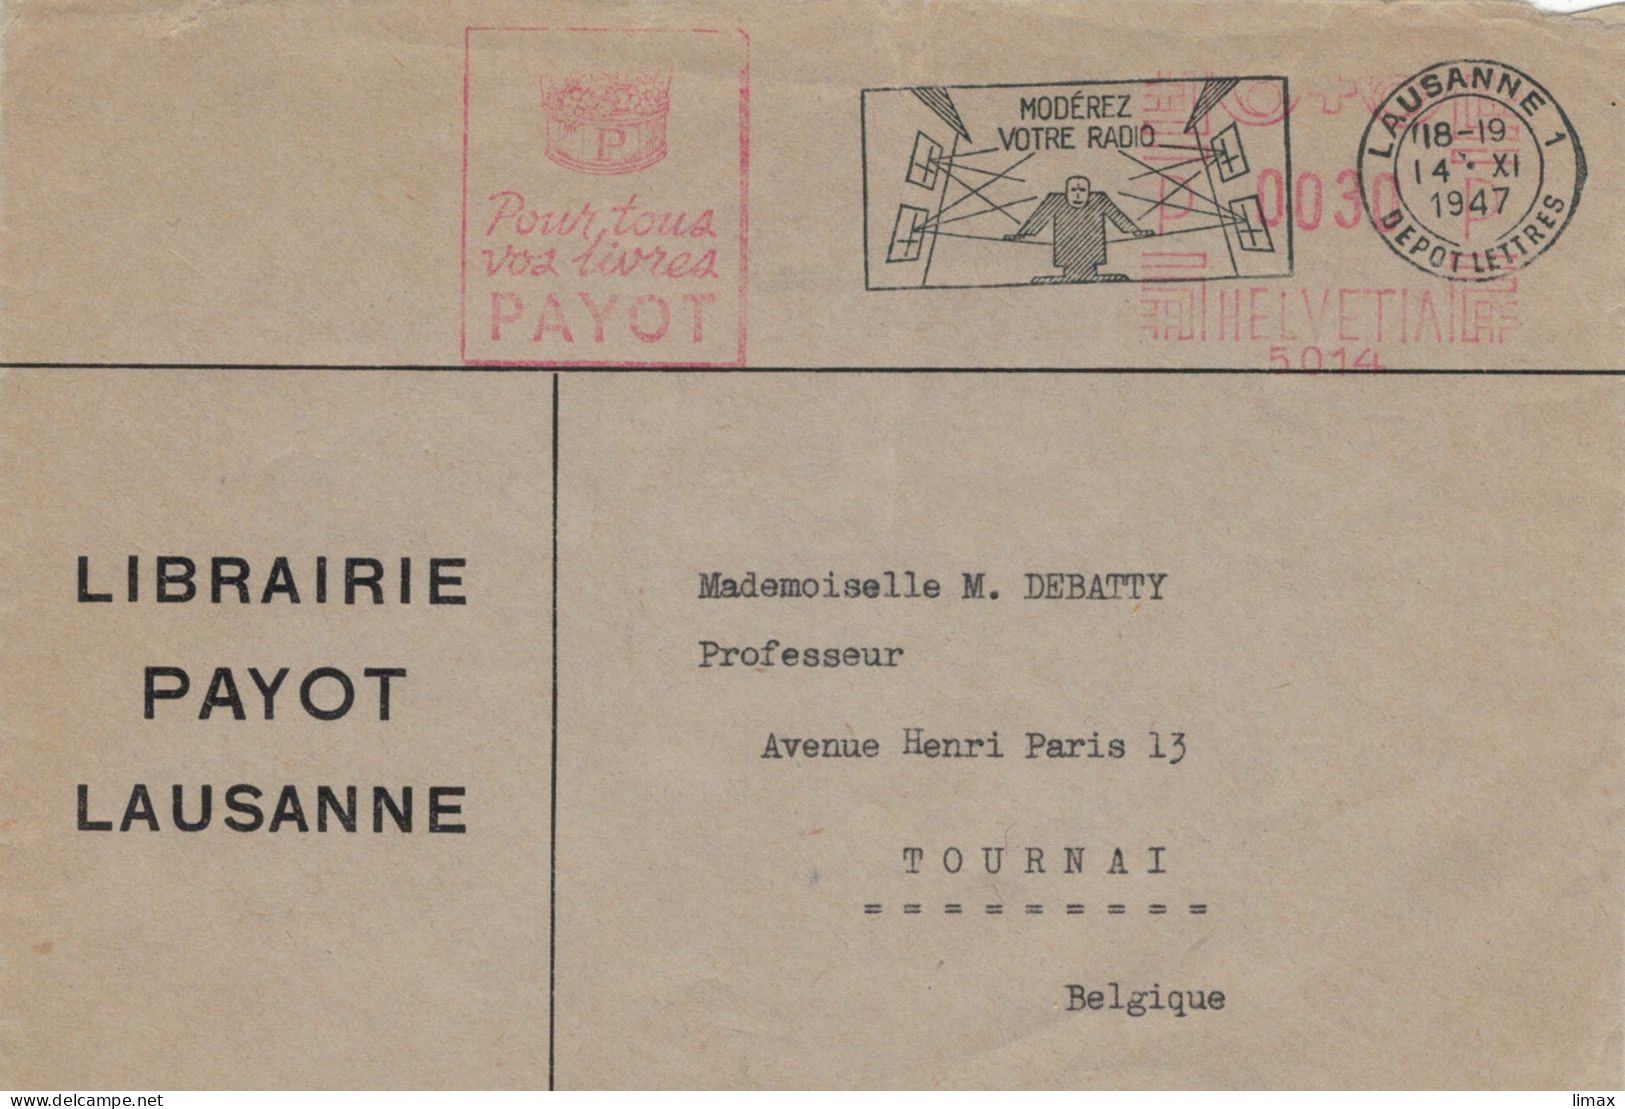 Librairie Payot Lausanne 1947 Stempel Nr. 5014 Moderez Votre Radio - Lautstärke > Prof. M. Debatty Tournai - Frankeermachinen